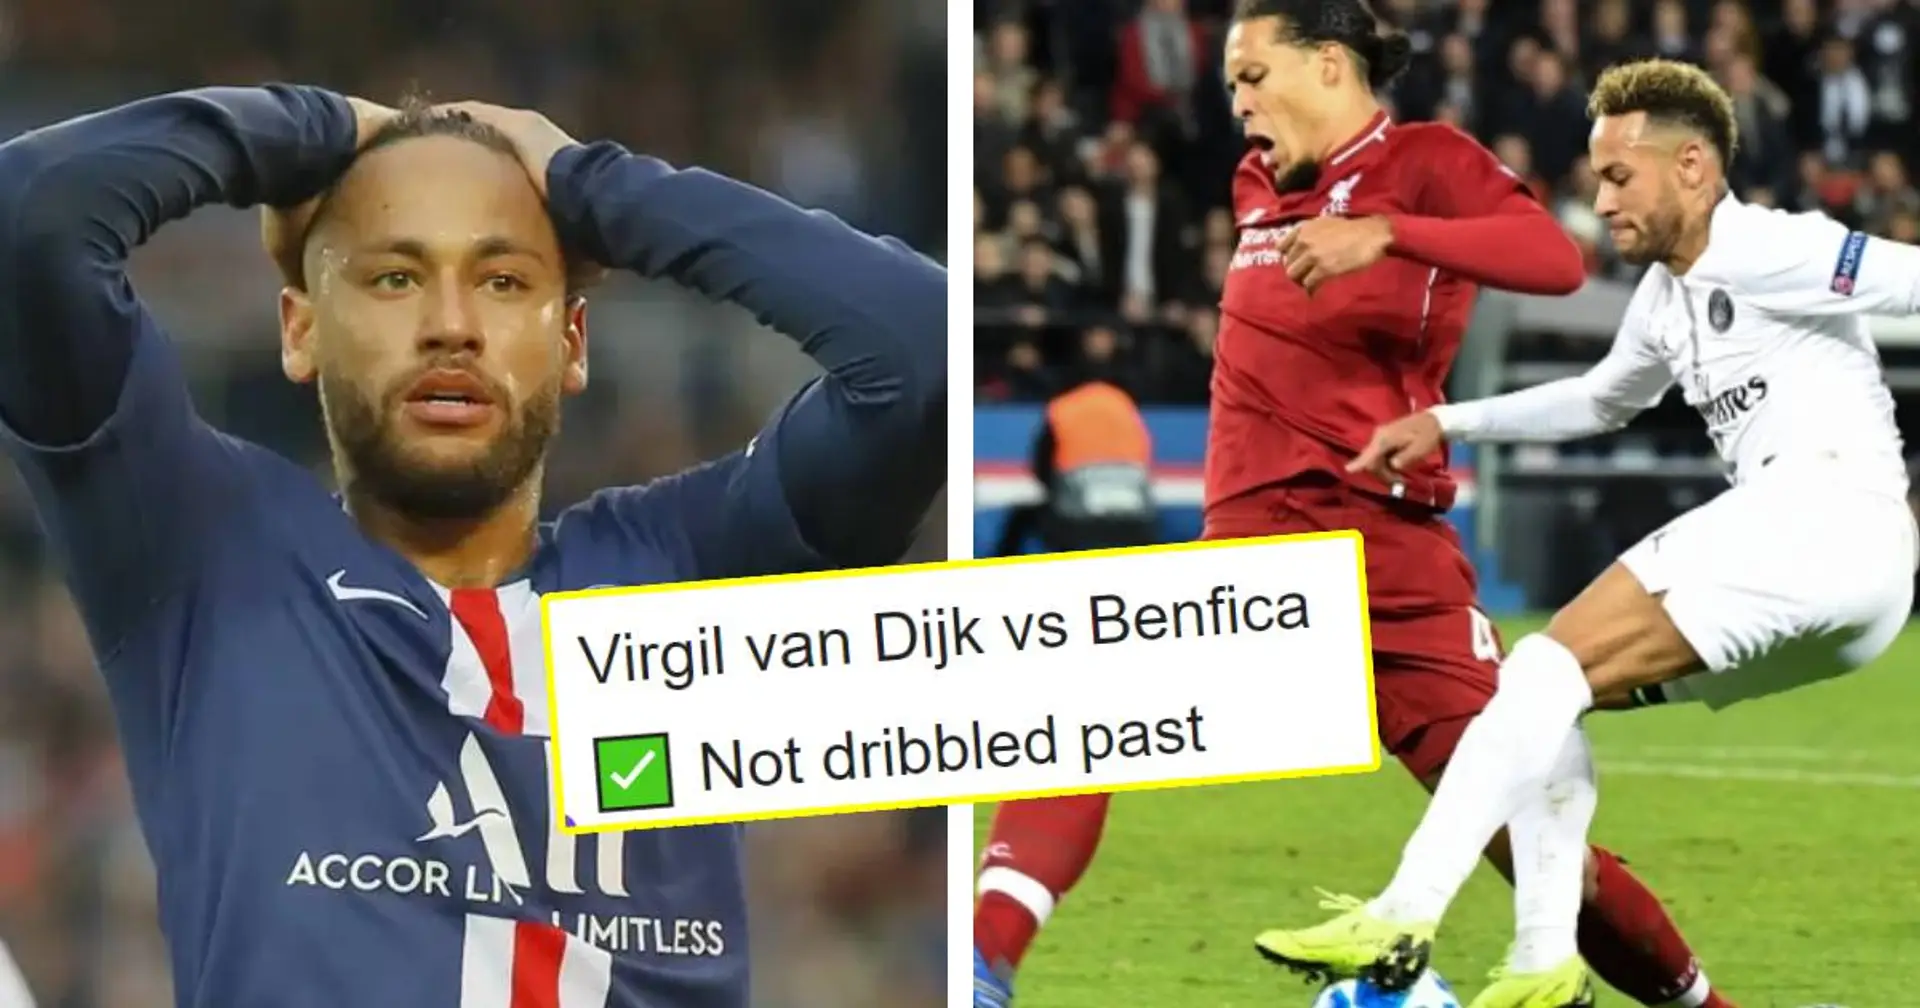 Aucune fois dribblé - la stat de Van Dijk énerve un fan du PSG! Un moment choquant impliquant Neymar refait surface